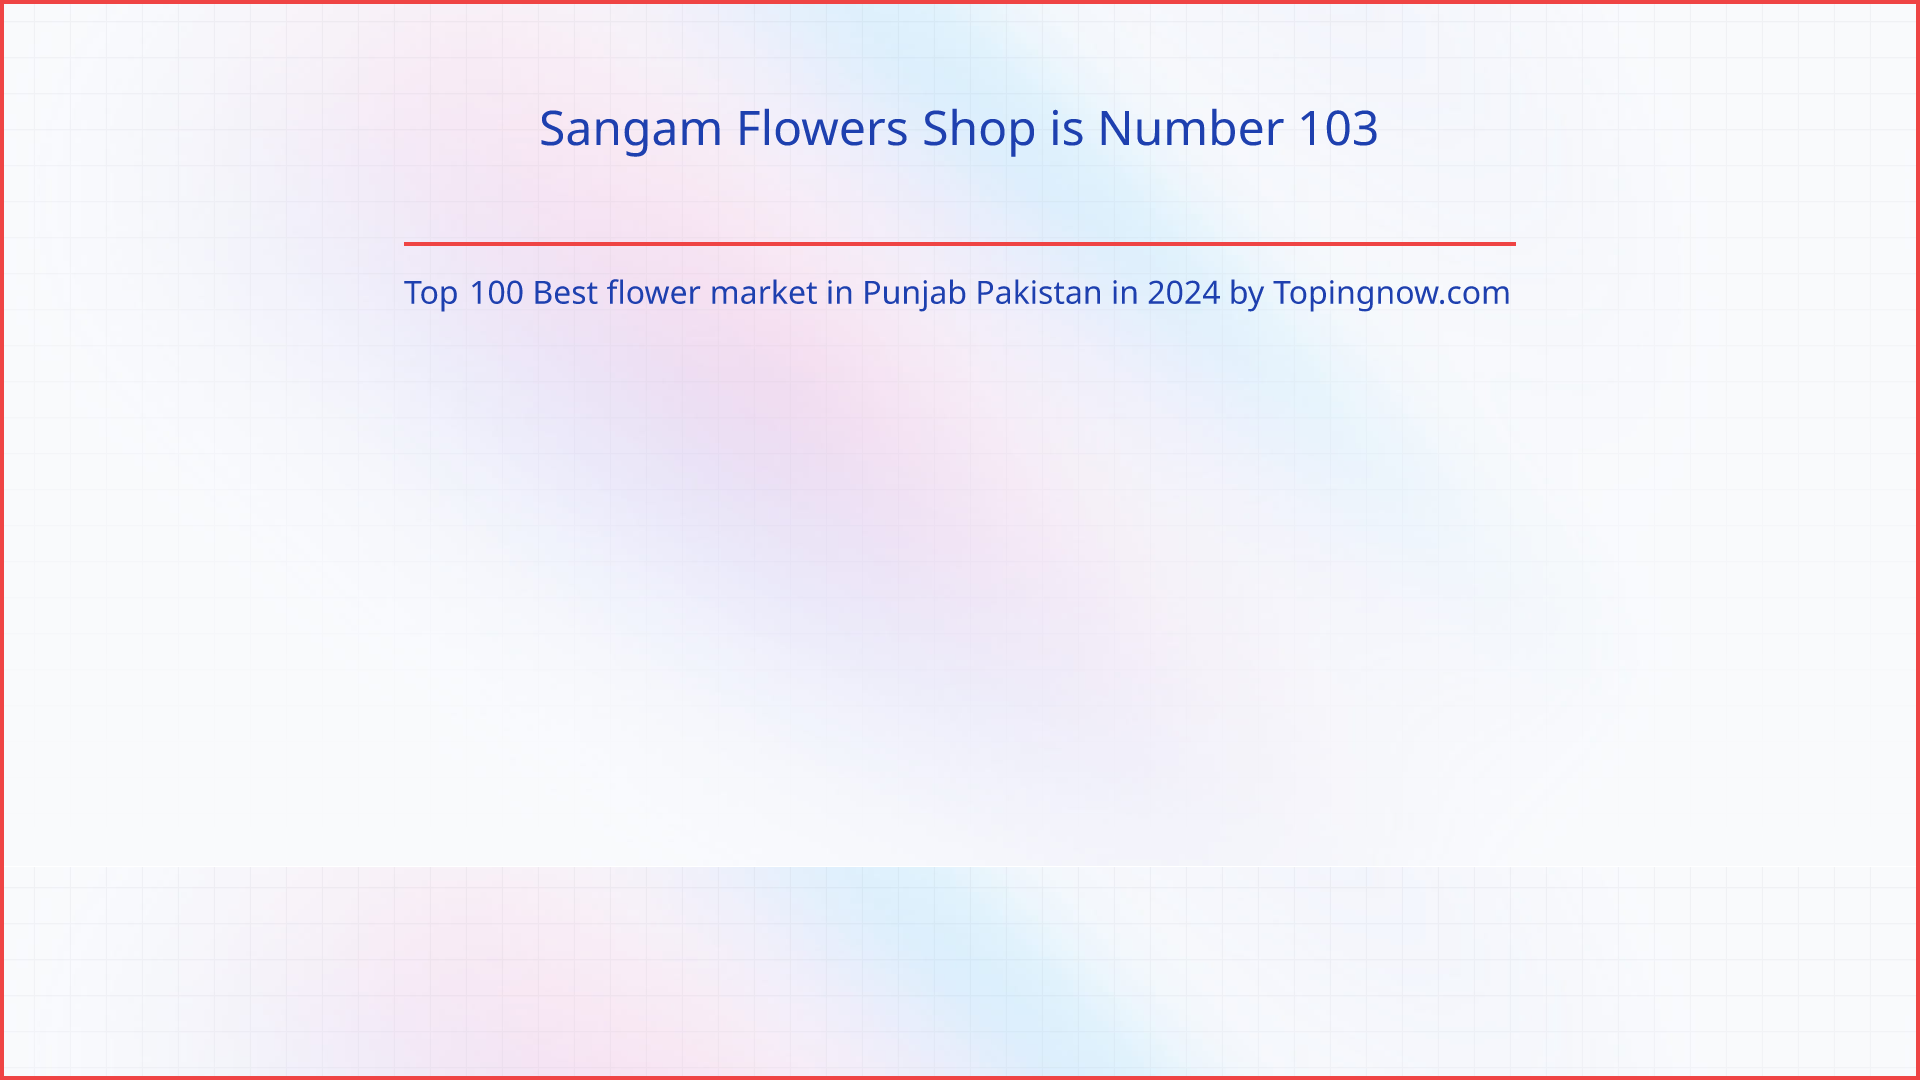 Sangam Flowers Shop: Top 100 Best flower market in Punjab Pakistan in 2024